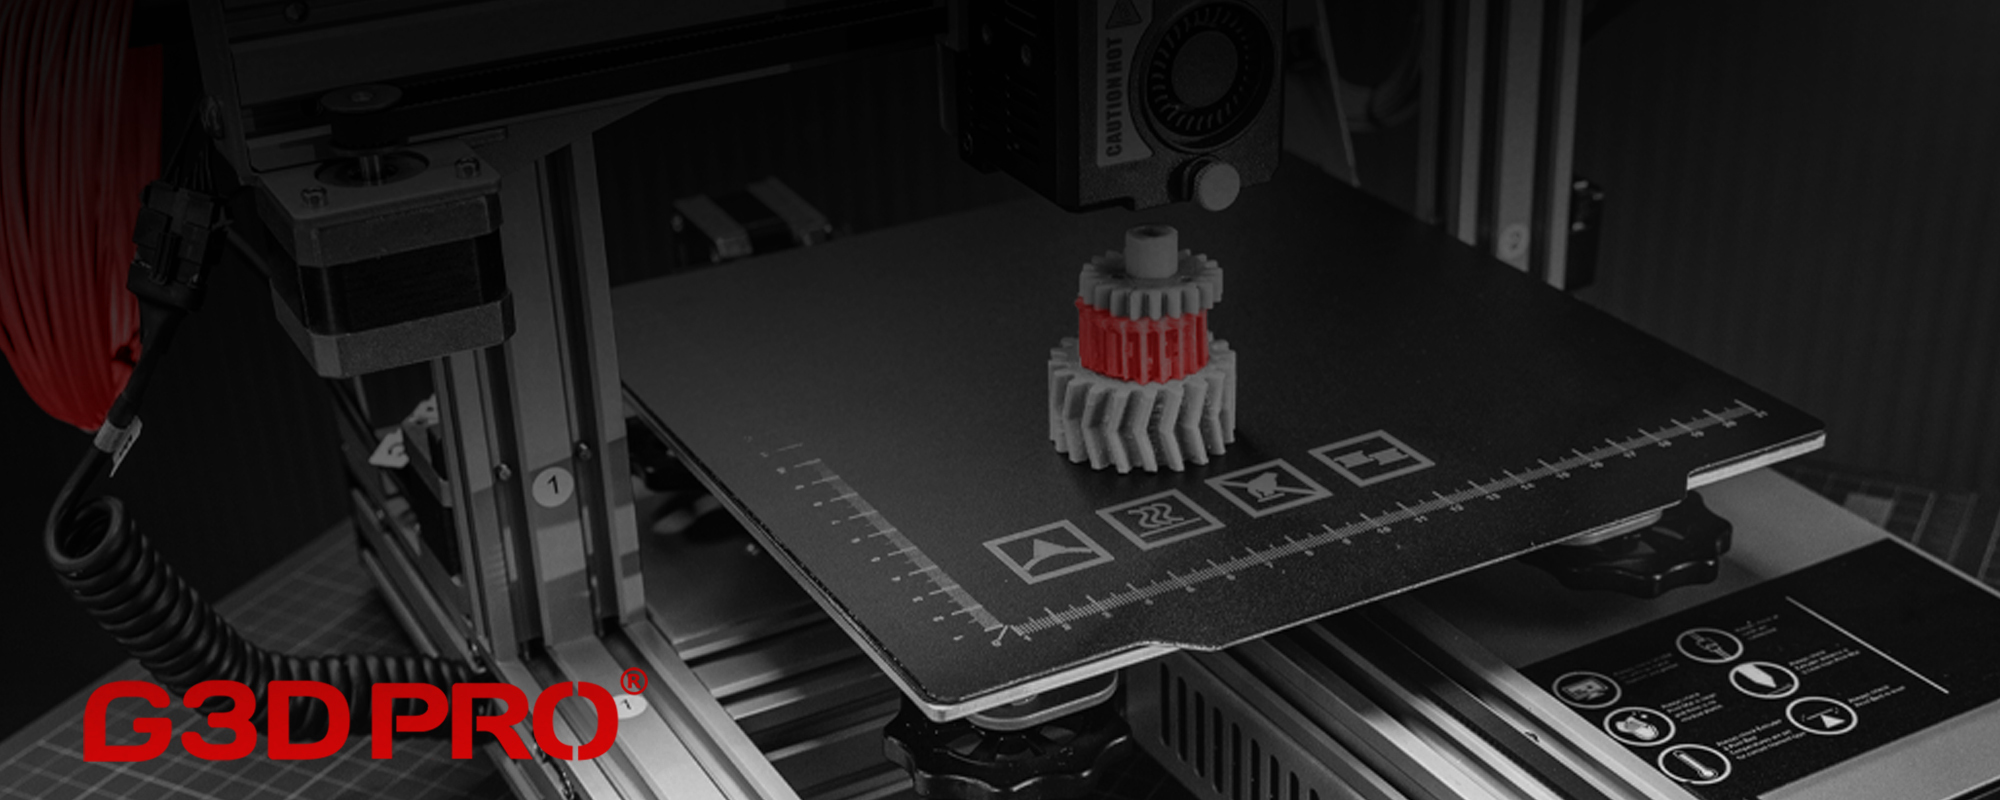 Accessoires et pièces détachées d'imprimantes 3D FDM - Grossiste 3D